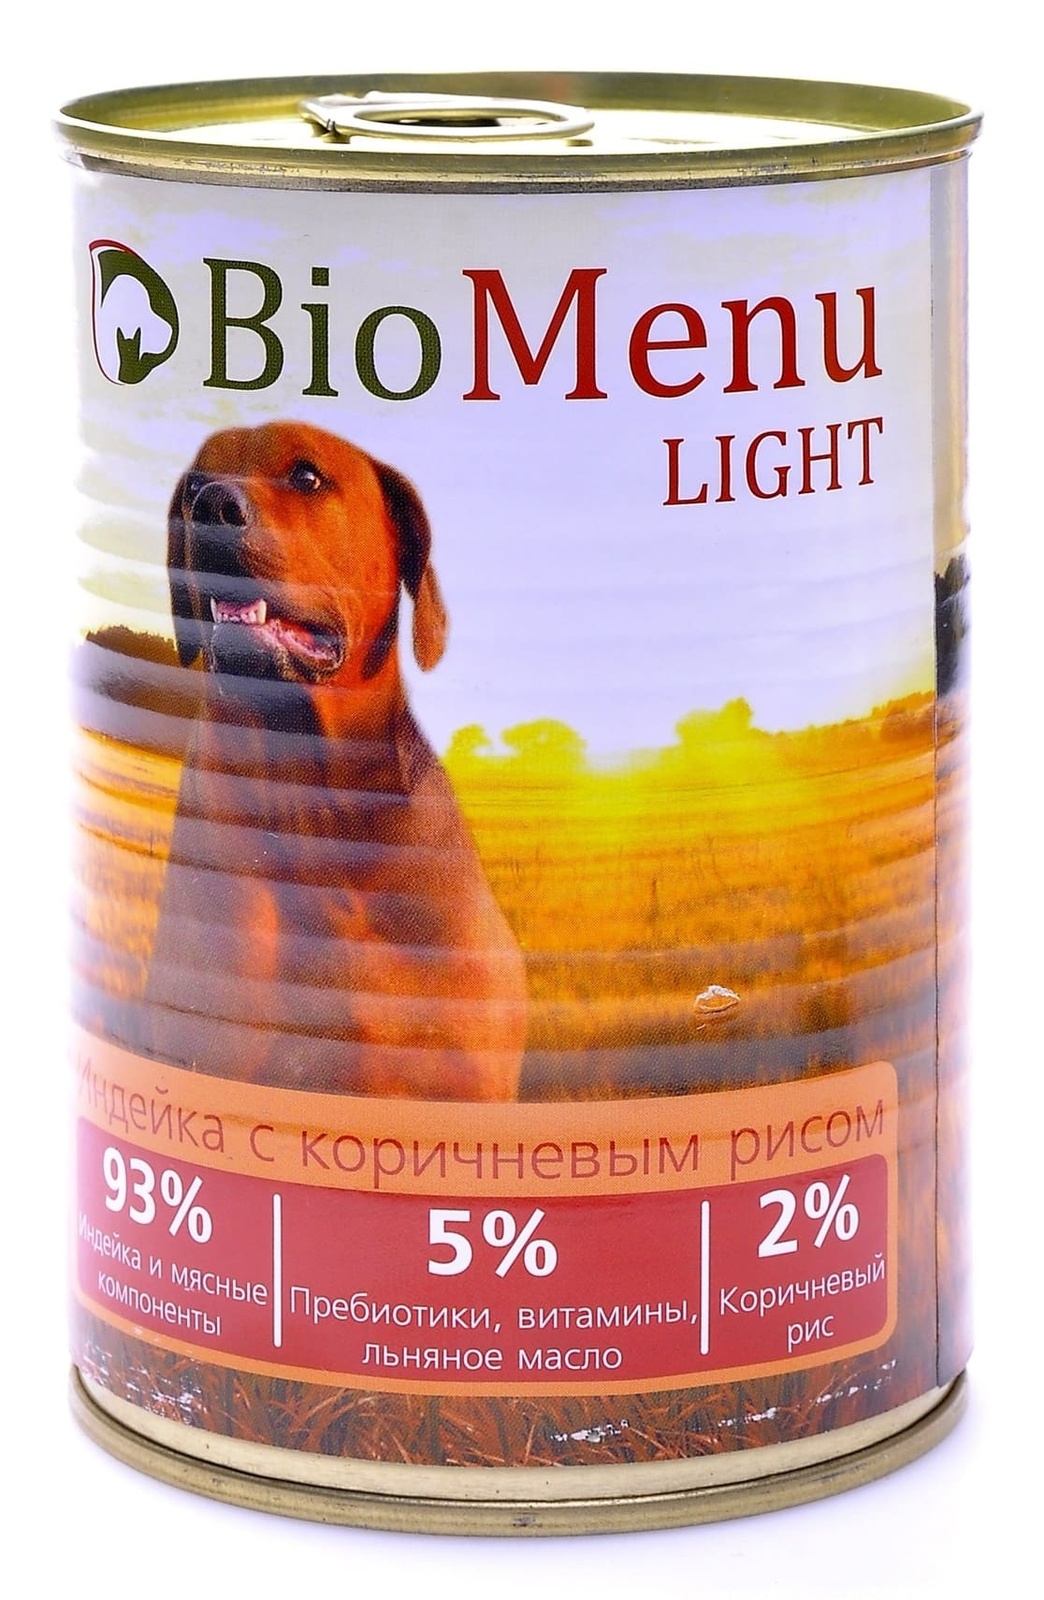 BioMenu BioMenu консервы для собак низкокалорийные с индейкой и коричневым рисом (100 г) biomenu biomenu консервы для собак низкокалорийные с индейкой и коричневым рисом 100 г